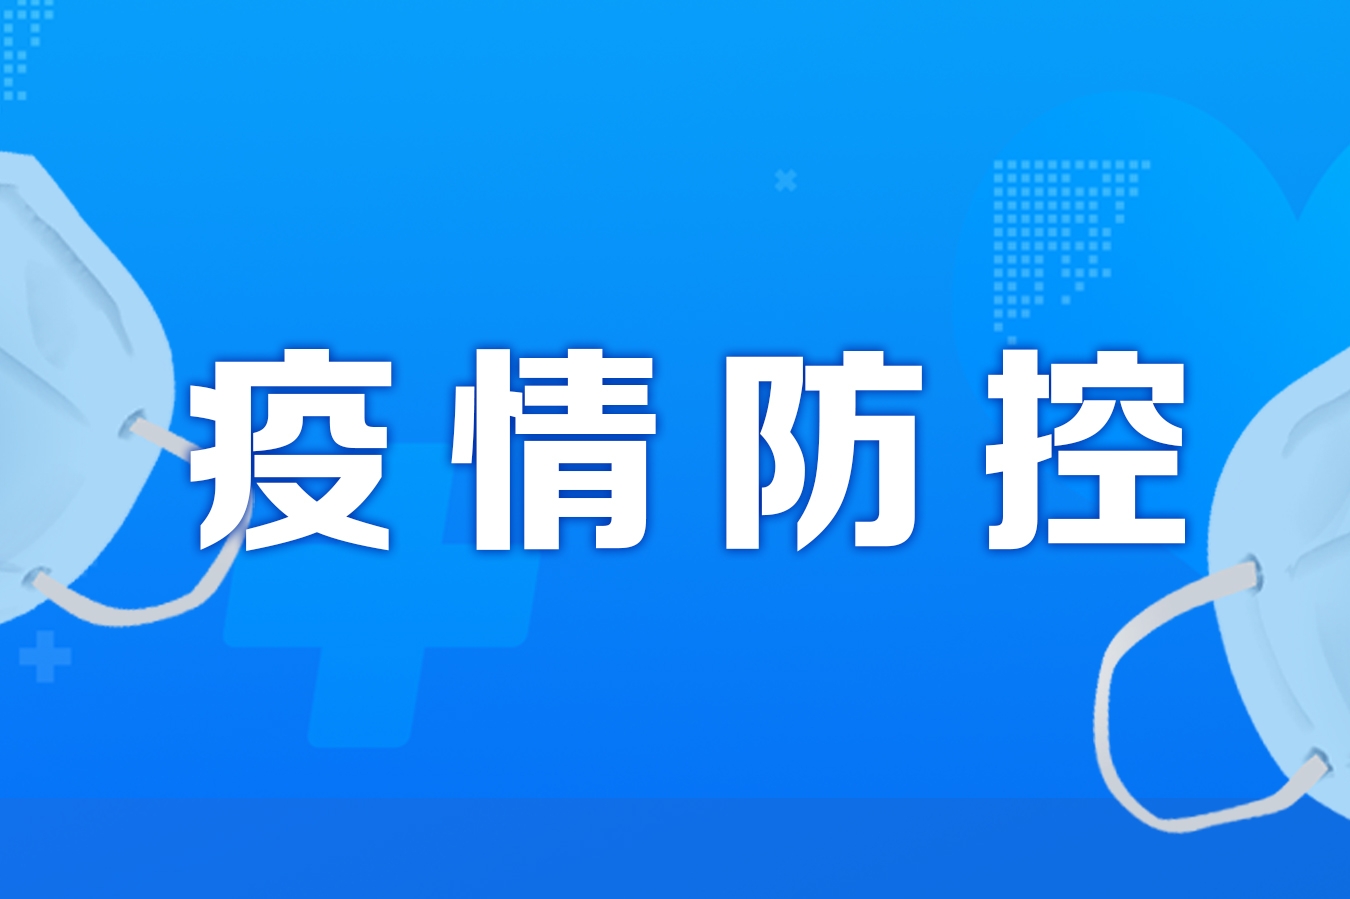 重庆市新型冠状病毒肺炎疫情防控指挥部综合办公室关于进一步优化疫情防控措施的通知渝肺炎指办发〔2022〕102号